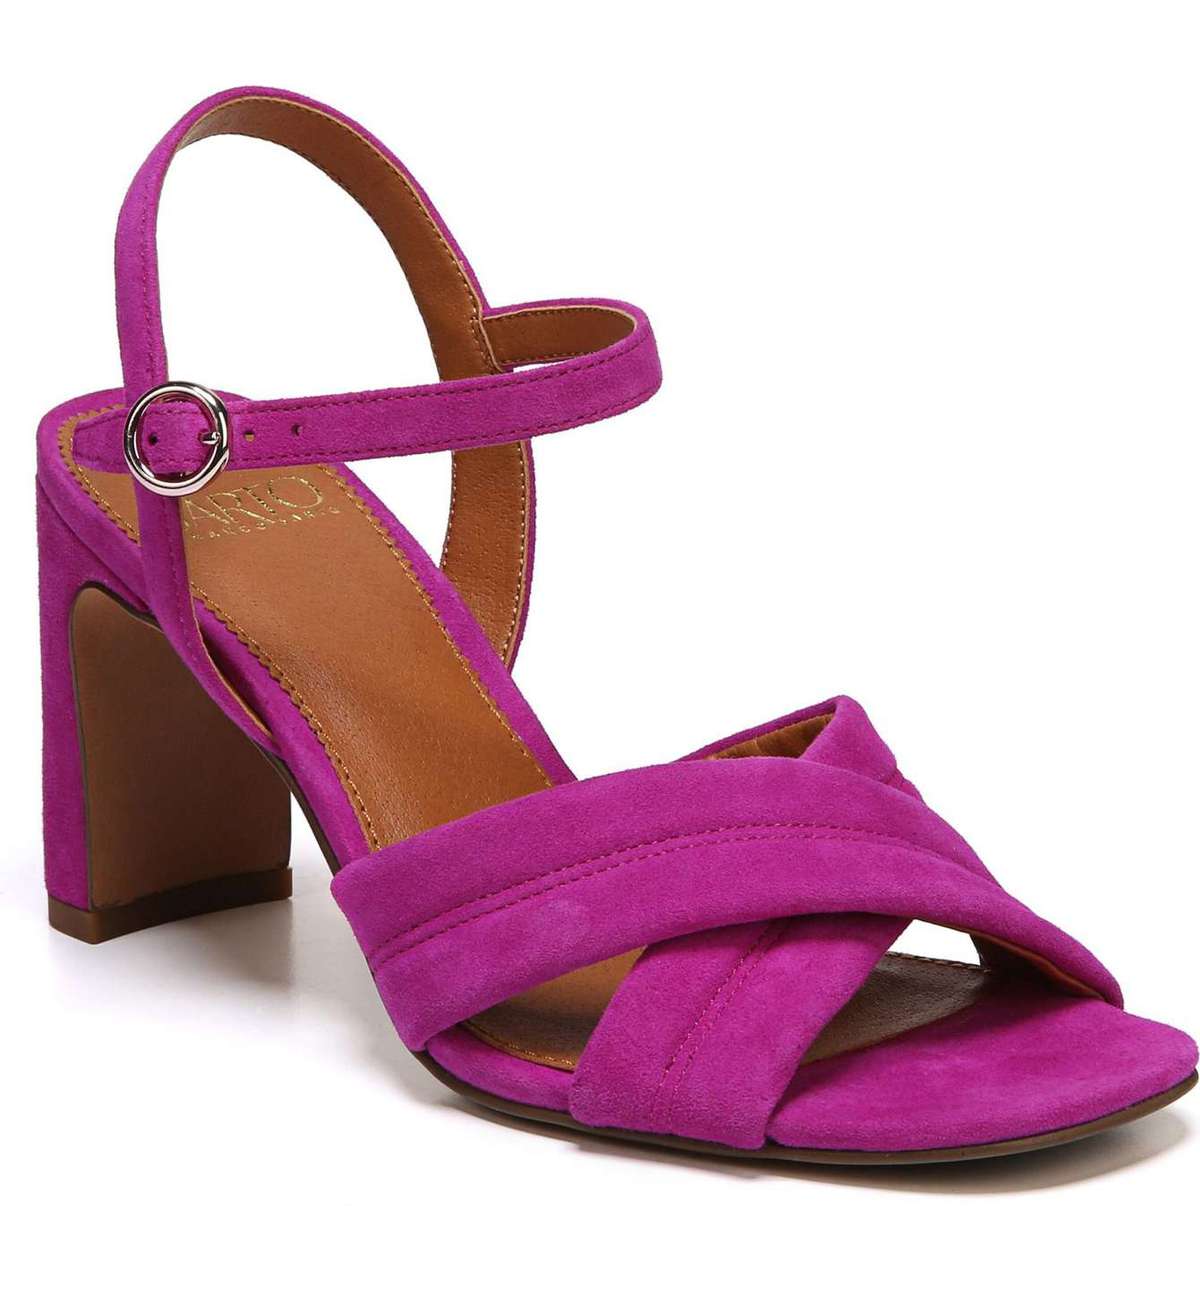 SARTO Franco Sarto suede heeled sandal in wild violet